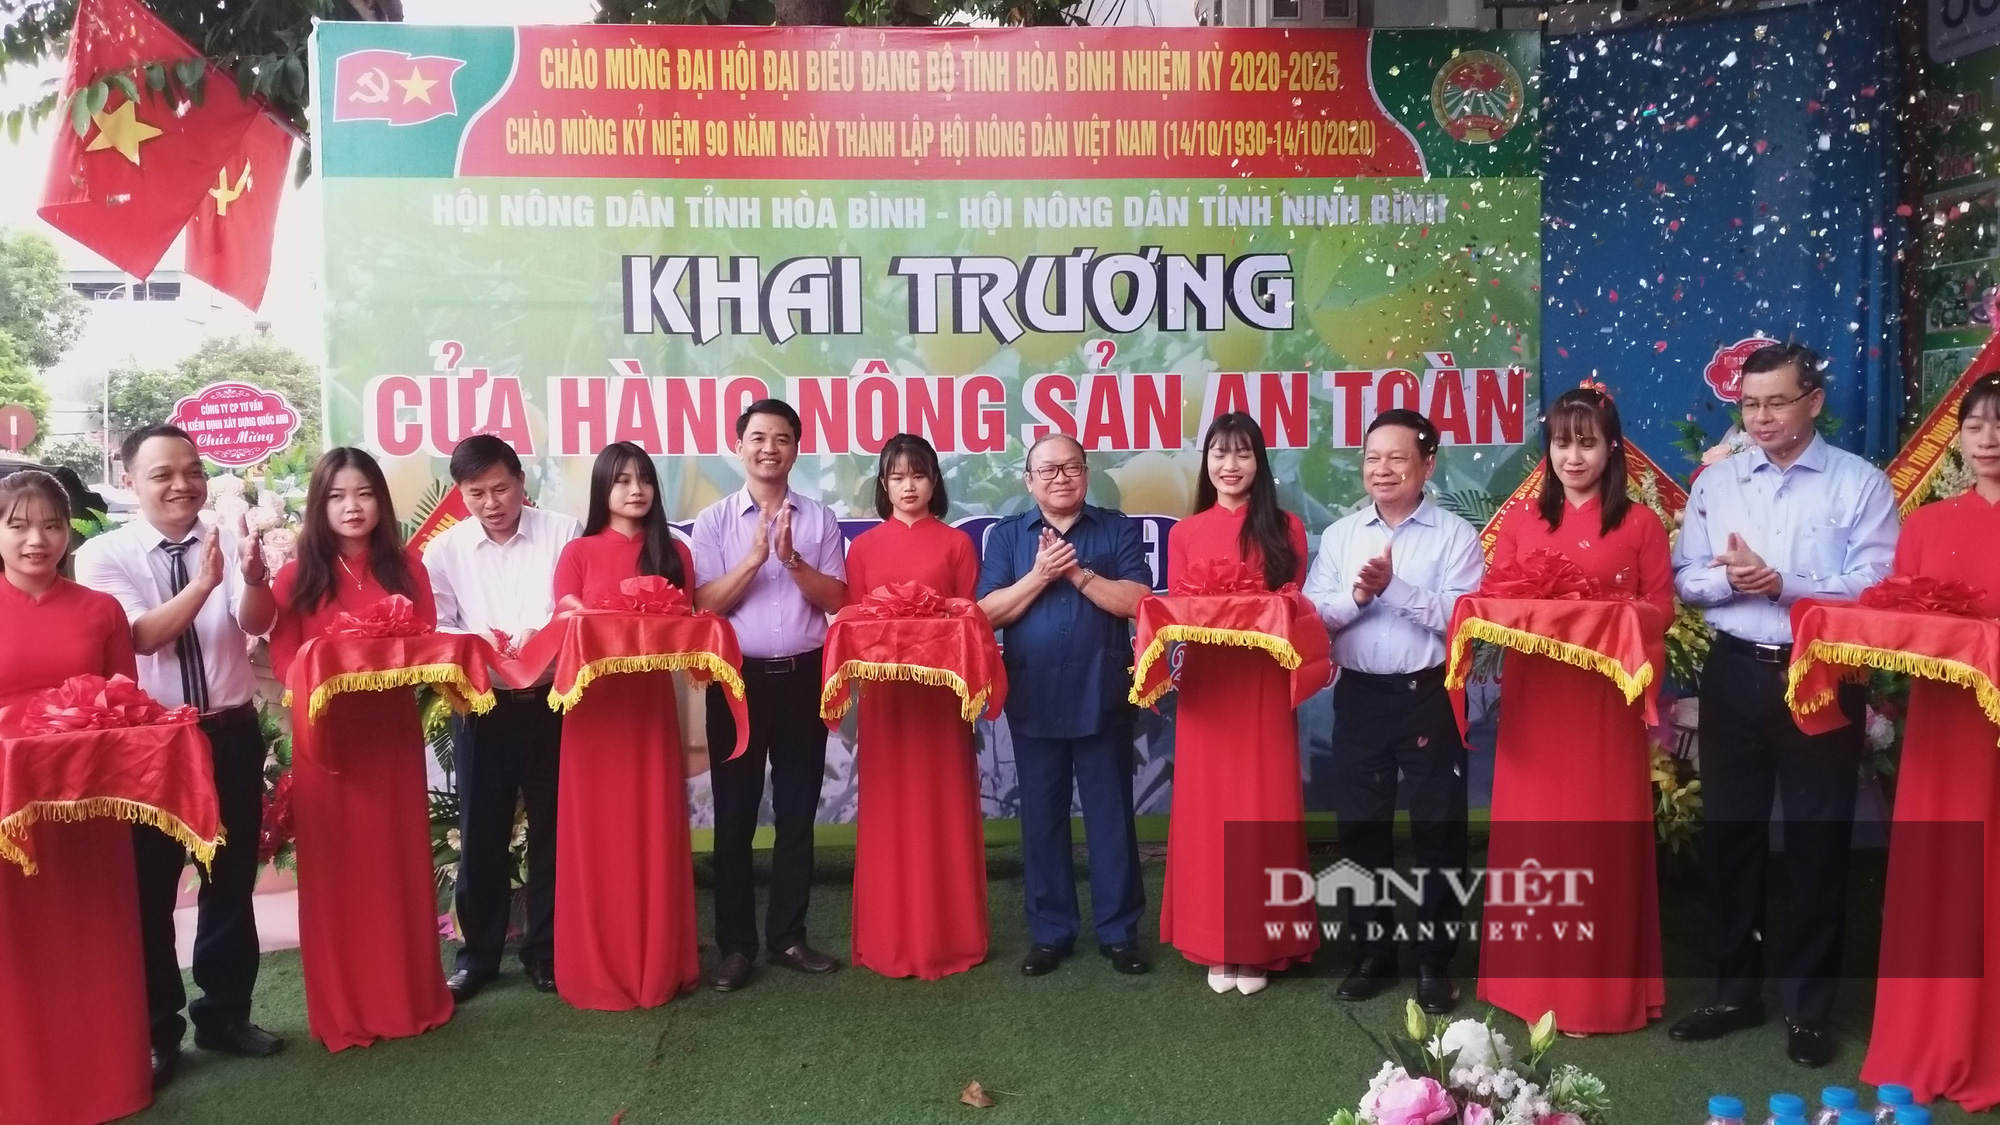 CLIP: Chủ tịch Hội Nông dân Việt Nam ấn tượng với đặc sản tại cửa hàng nông sản đặc sản đầu tiên ở Hòa Bình - Ảnh 2.